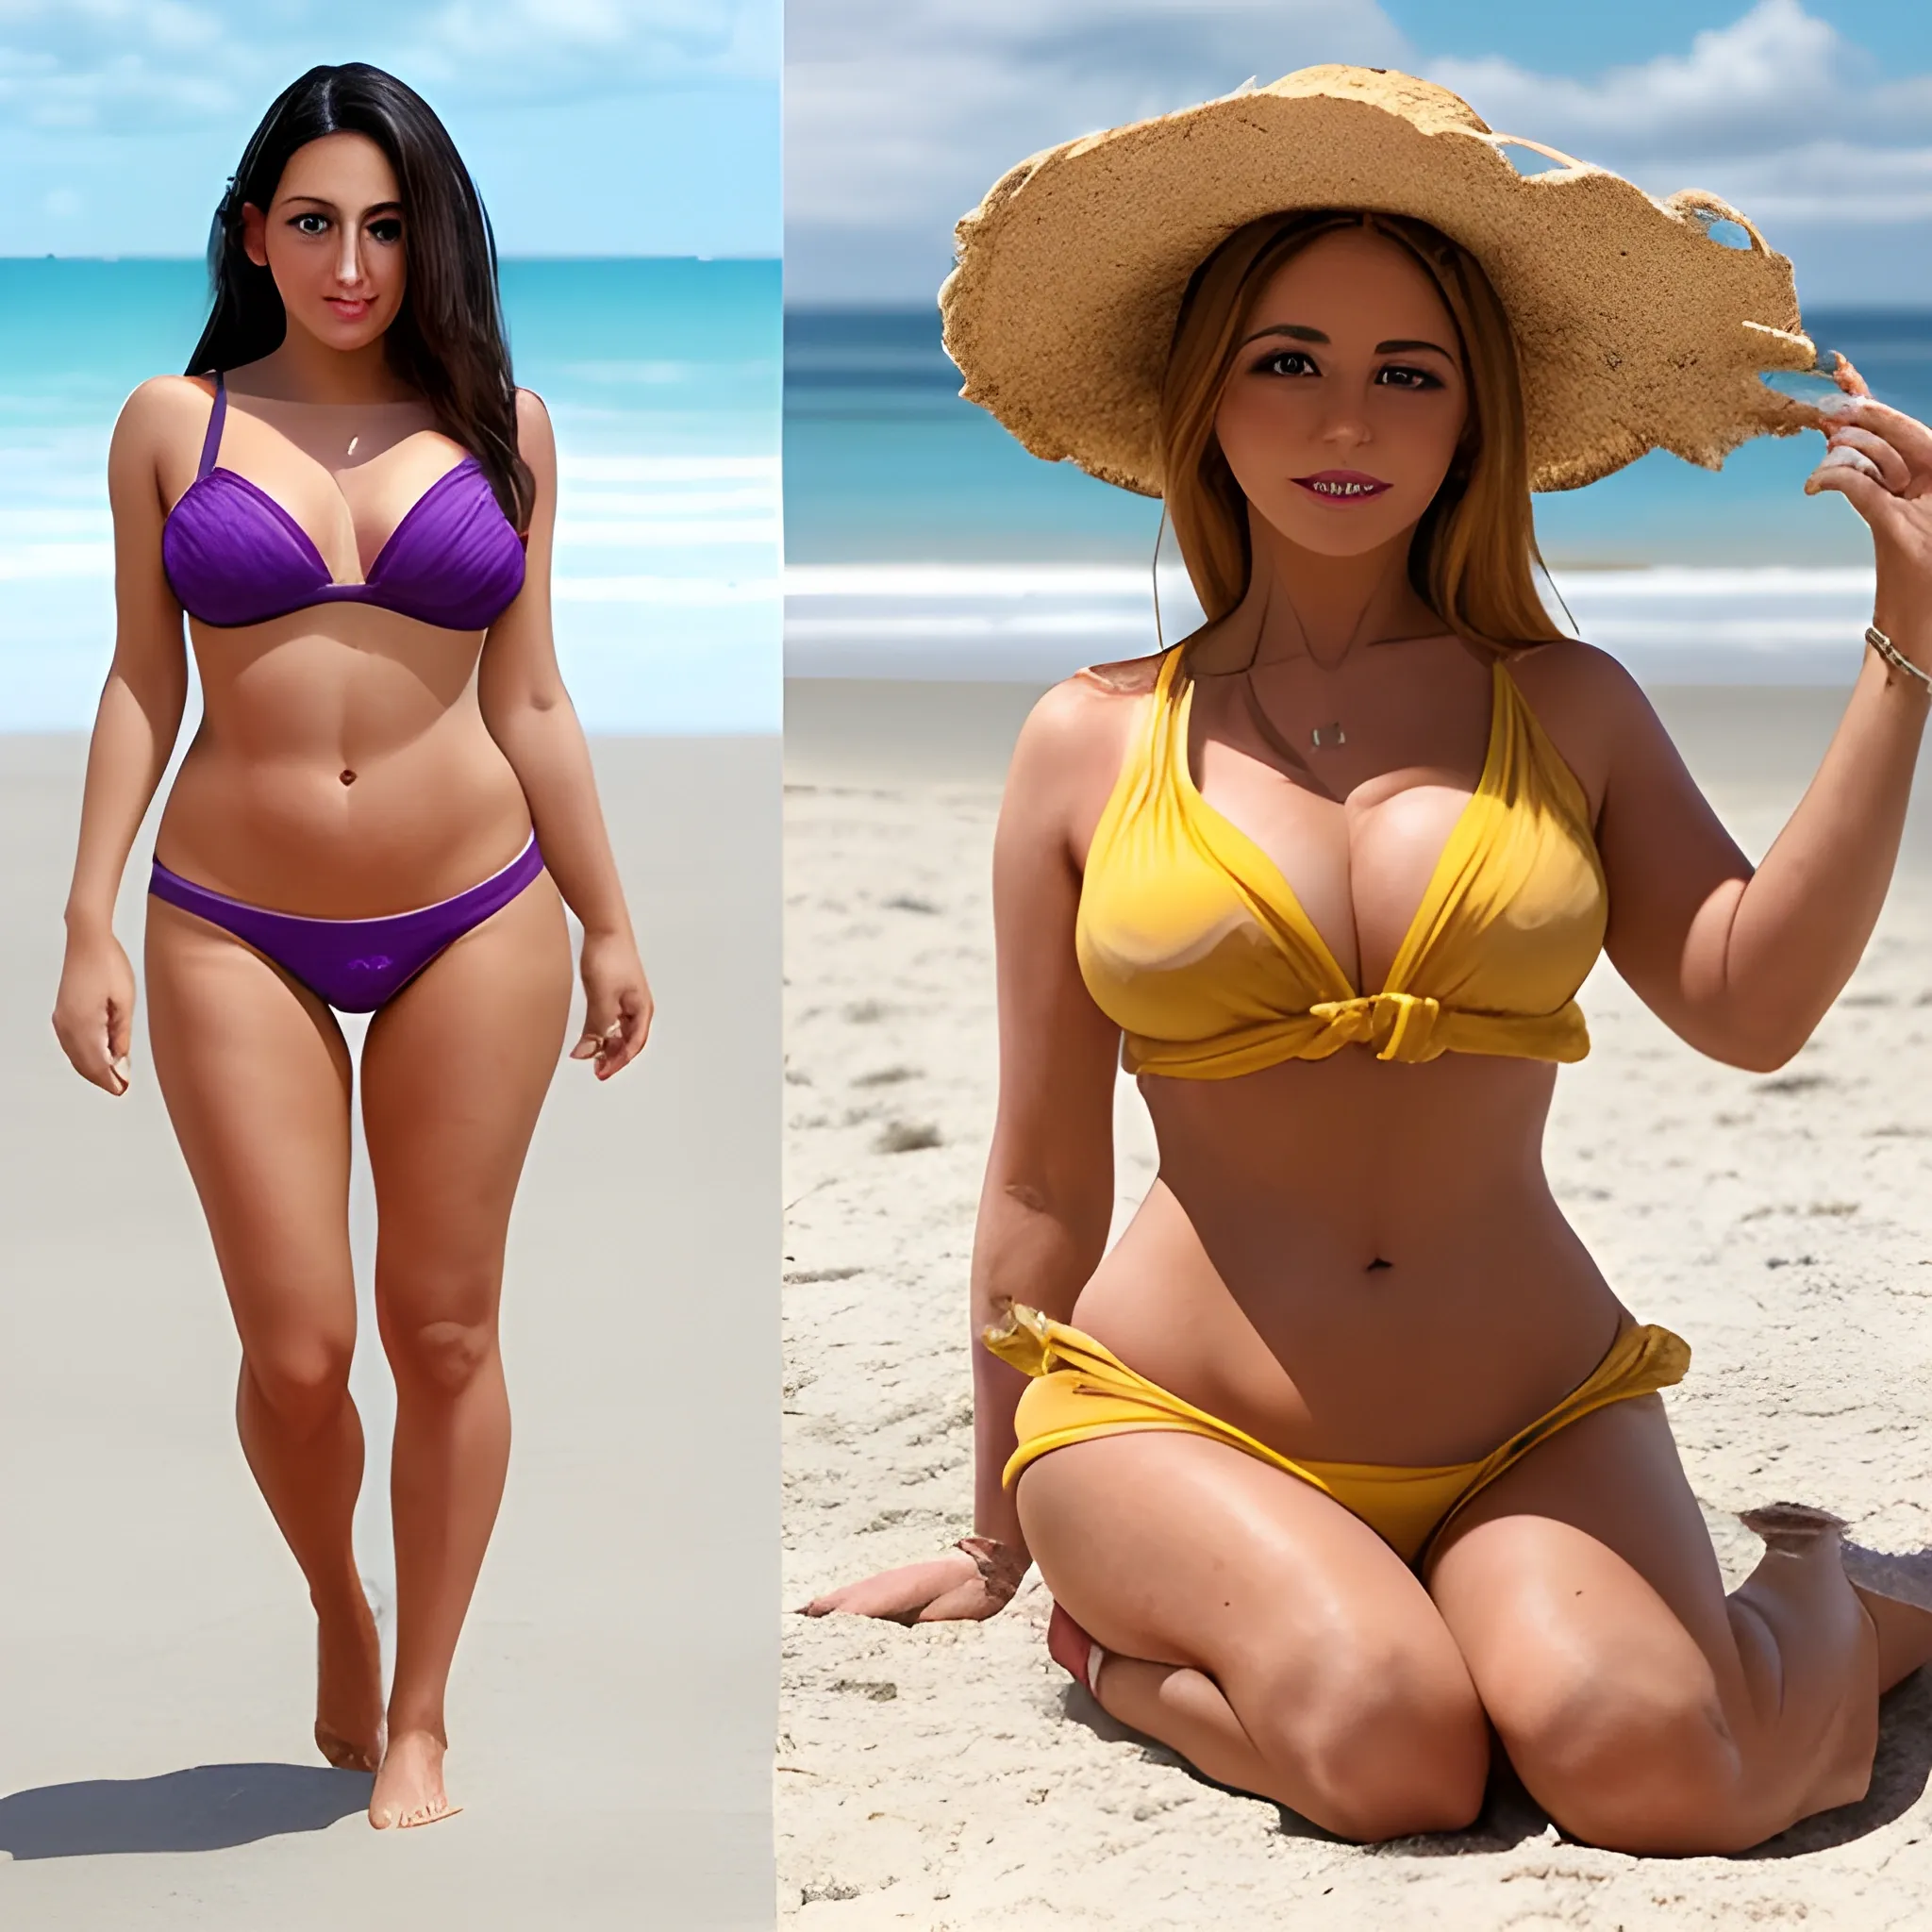 una mujer realista con miel morena, con una figura, 90,60,90, con ropa corta. mujer natural en una playa